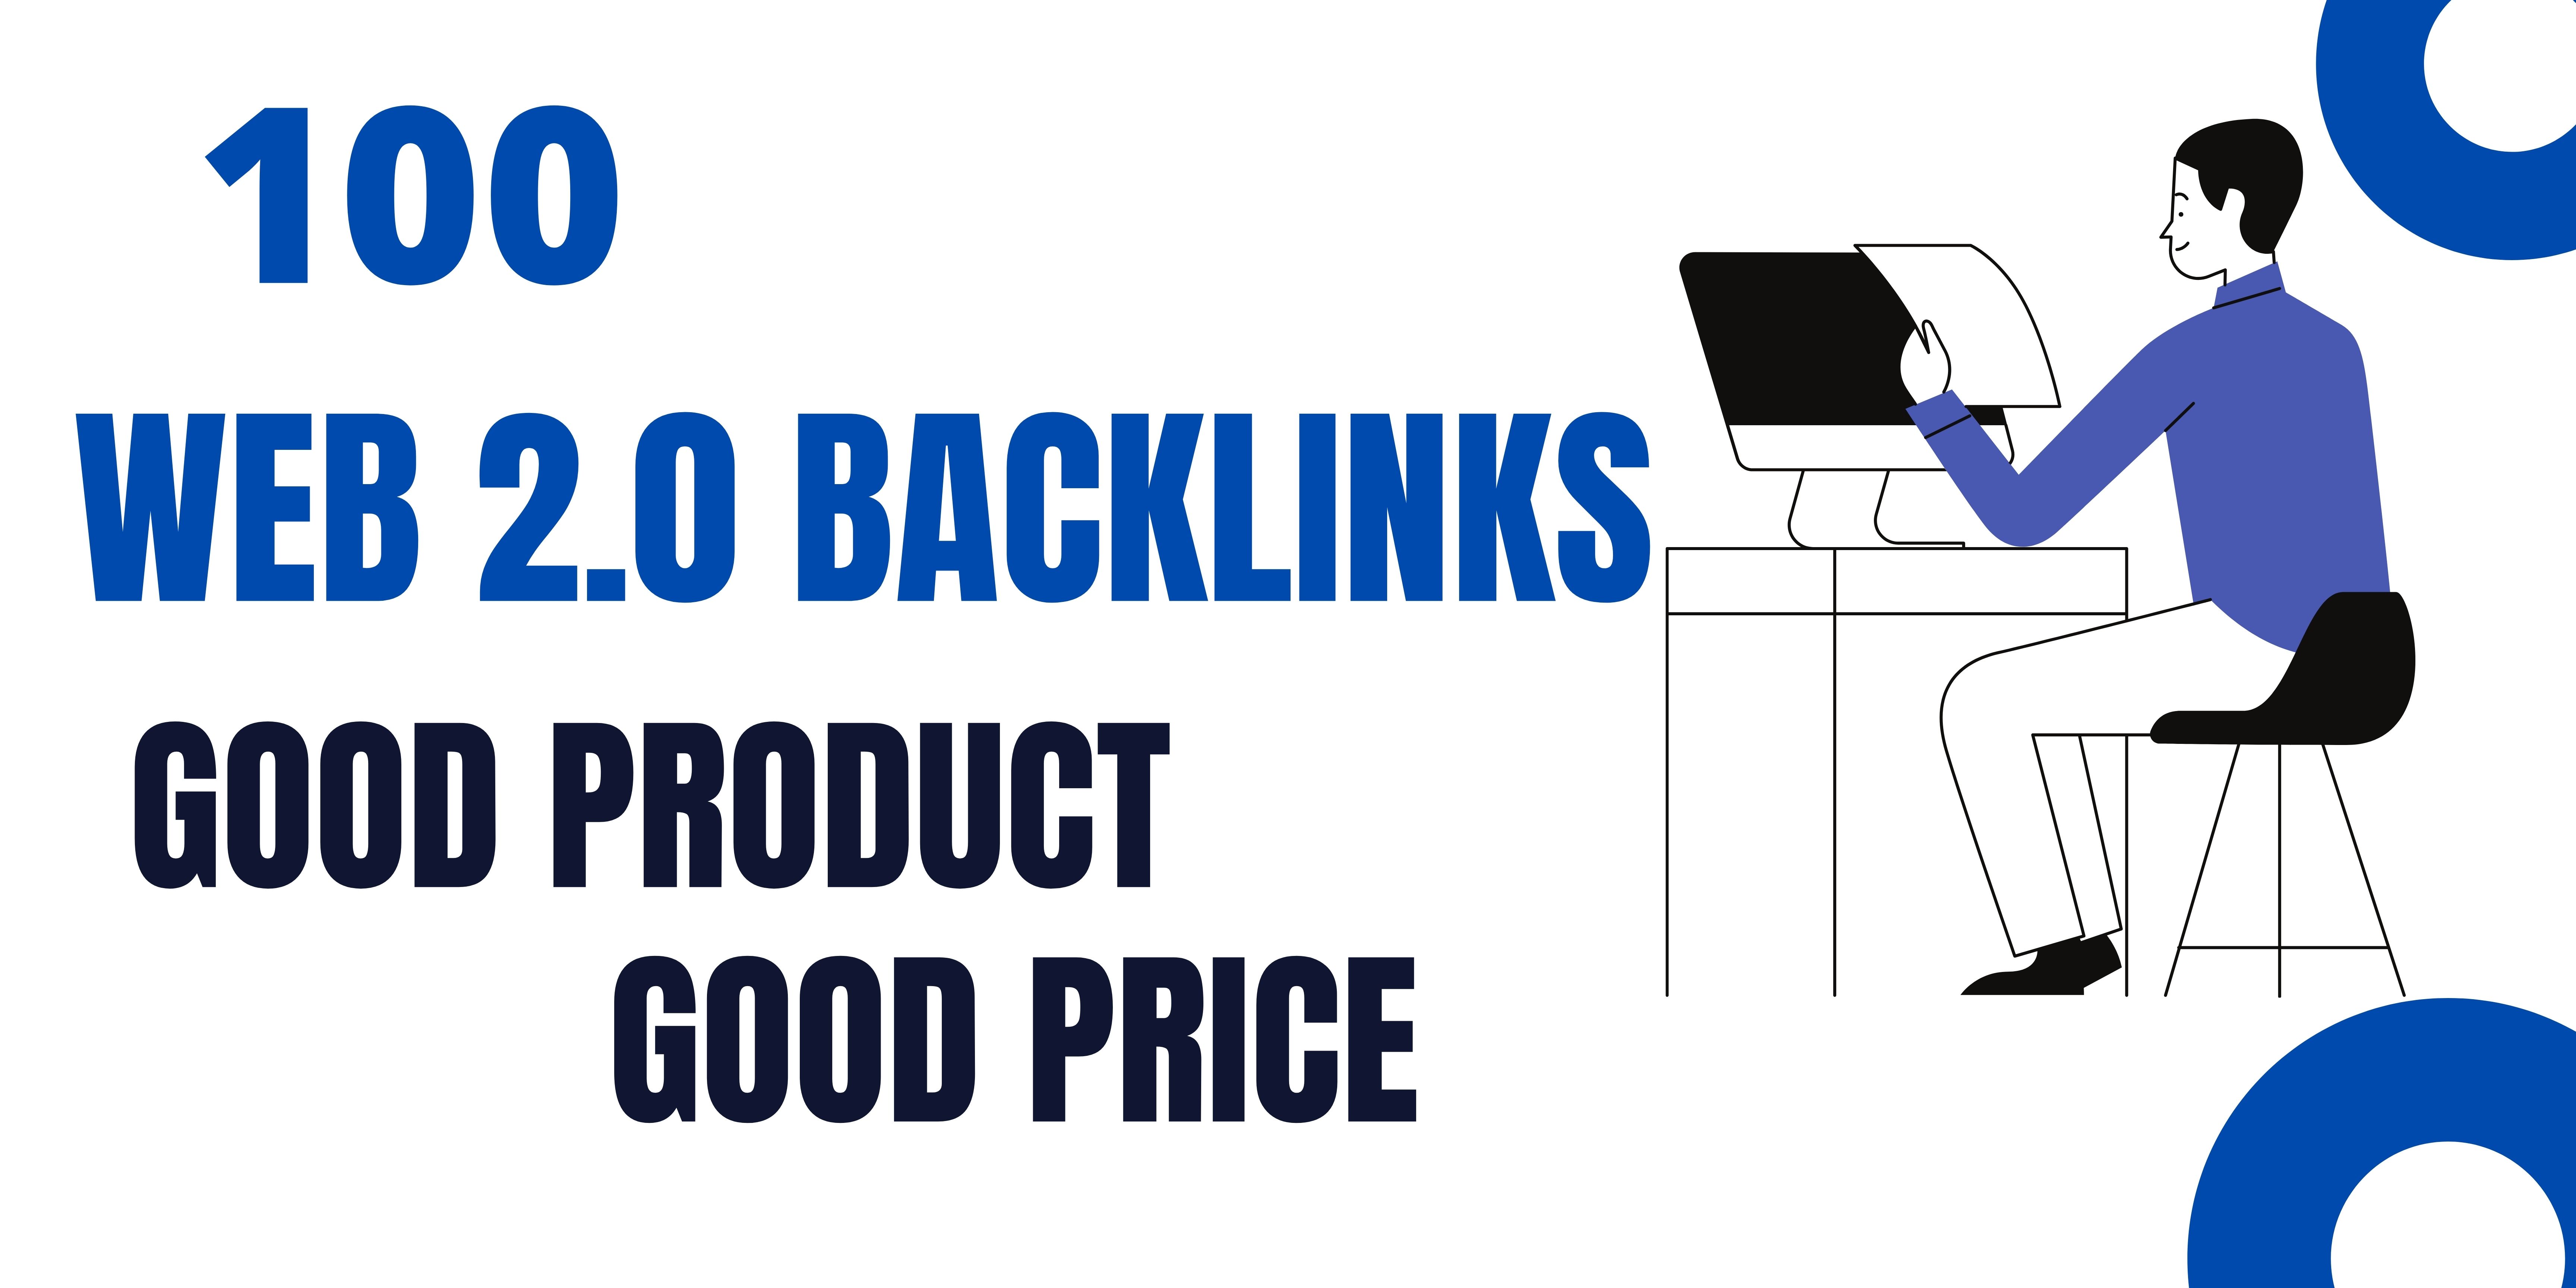 Provide 100 Web 2 0 backlinks manually